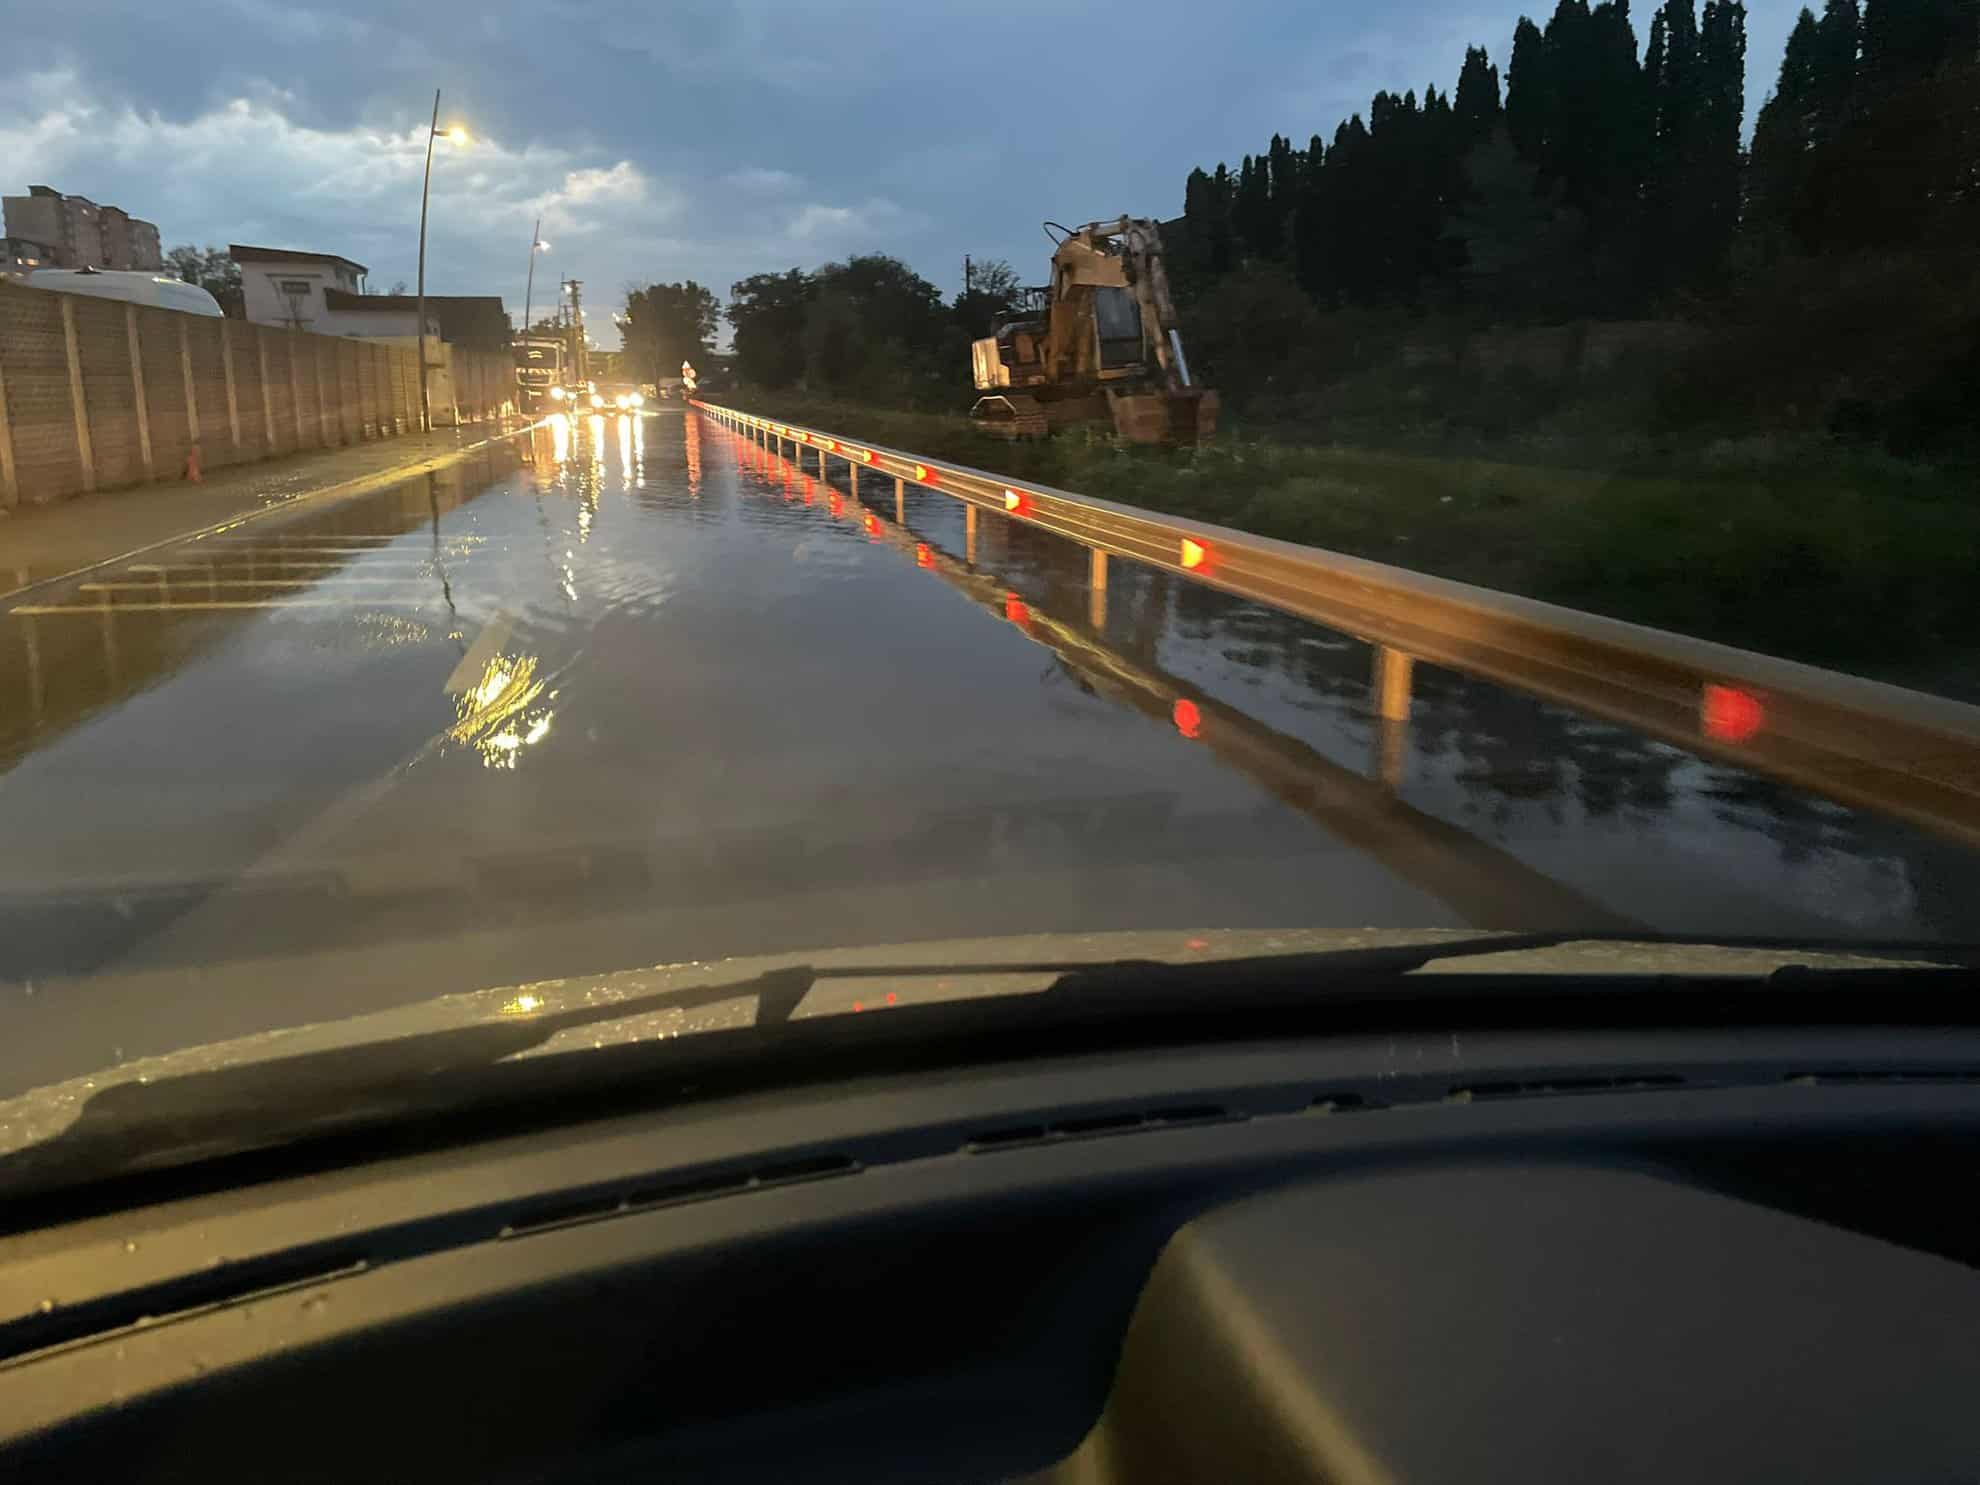 inundații în curți și pe mai multe străzi din sibiu (foto video)